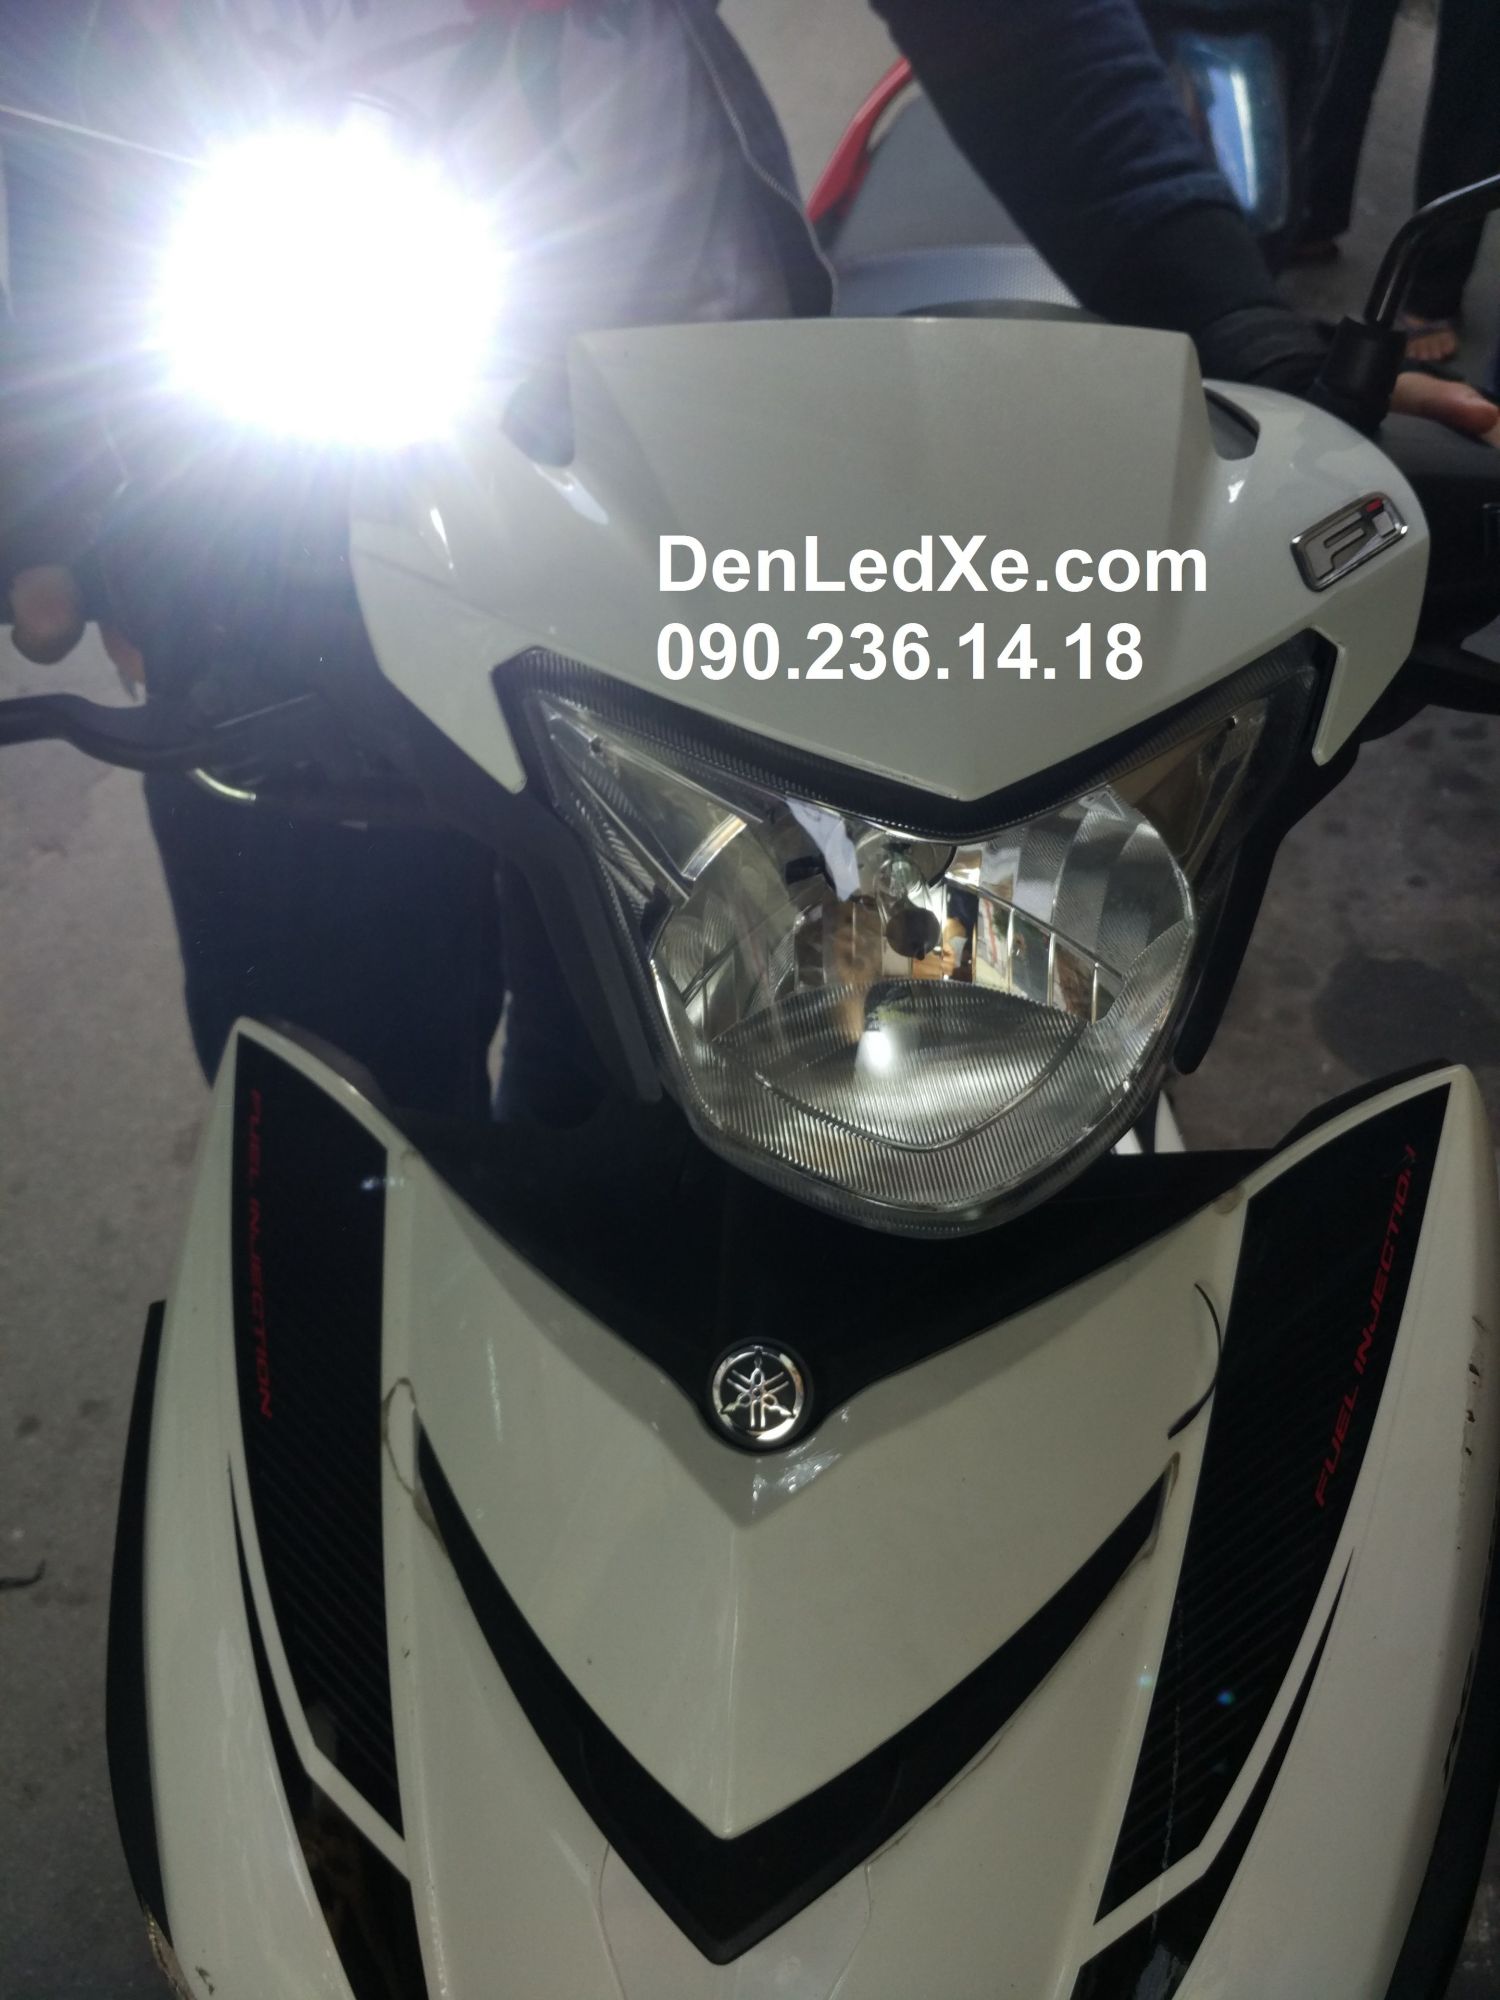 đèn led xe máy l4x